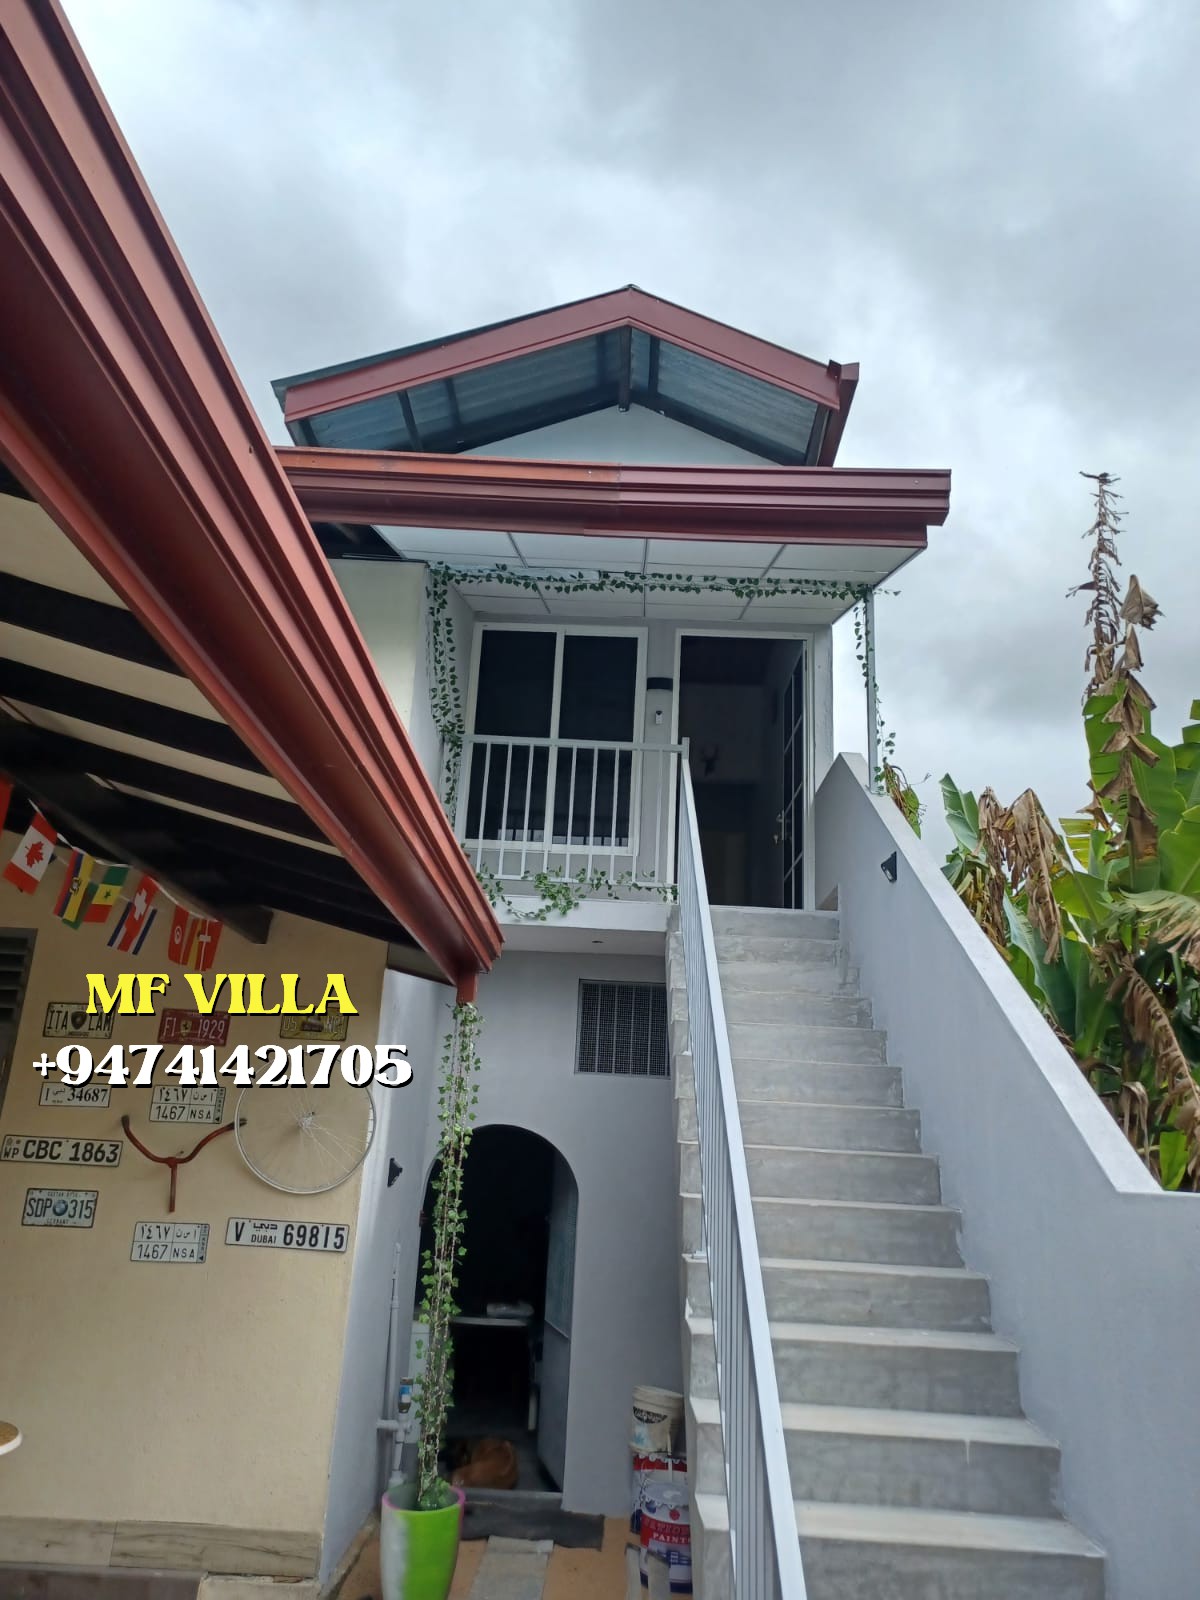 MF Villa Rooms rent  Negombo SRI LANKA